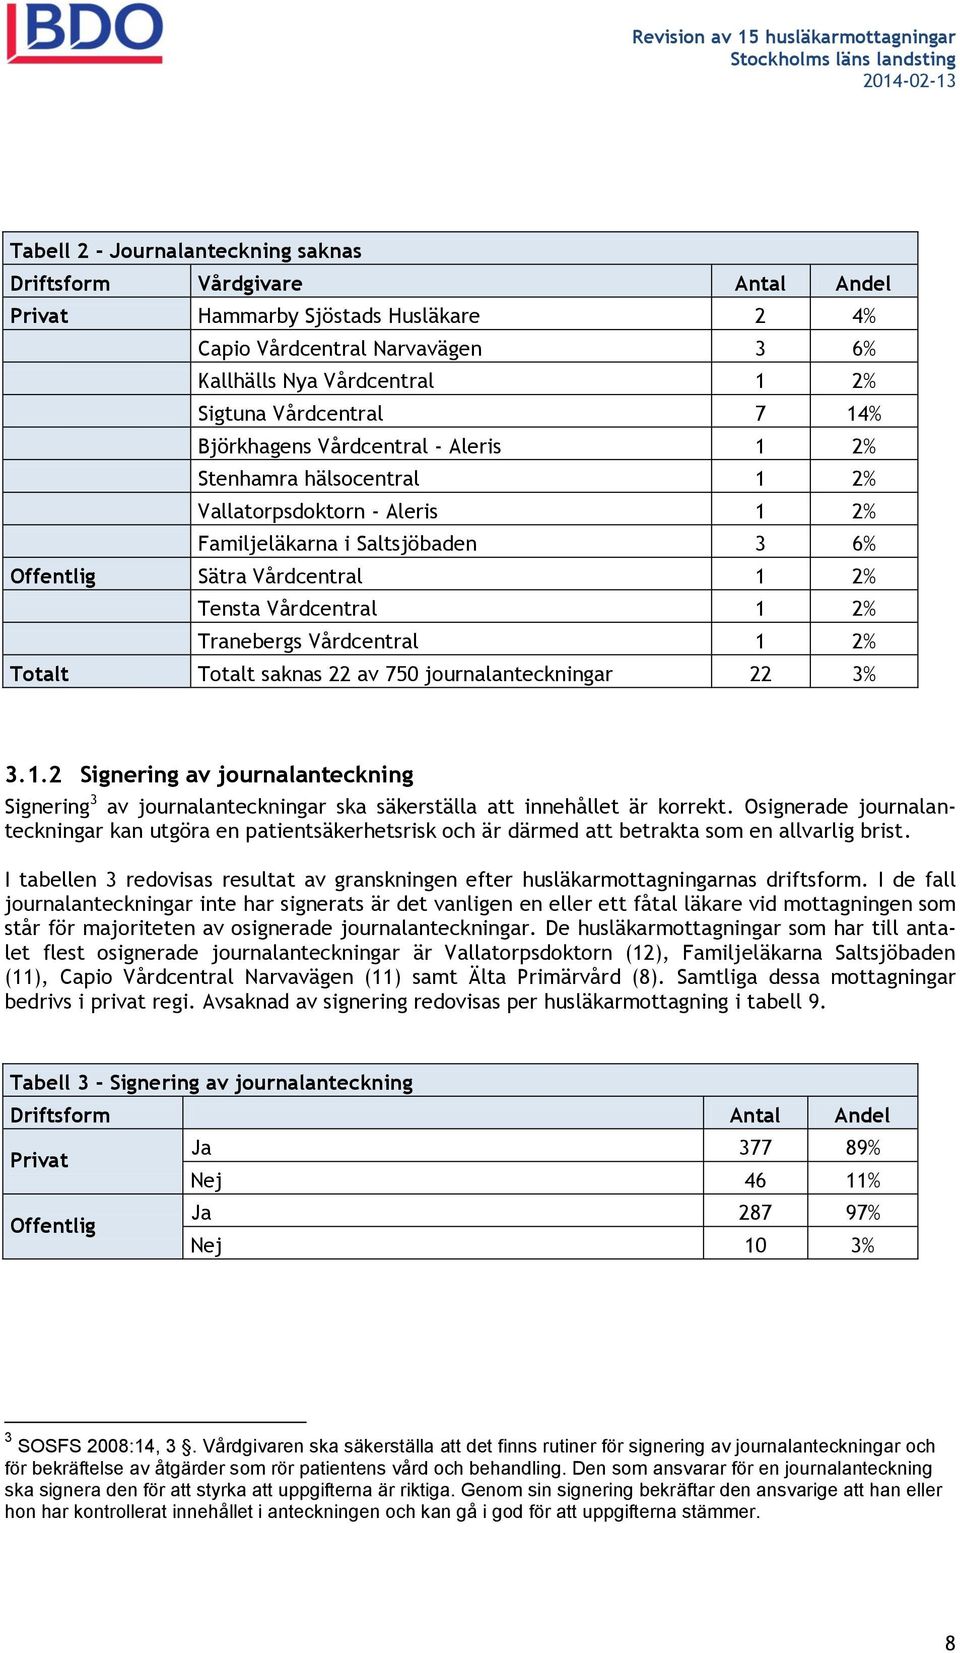 Tranebergs Vårdcentral 1 2% Totalt Totalt saknas 22 av 750 journalanteckningar 22 3% 3.1.2 Signering av journalanteckning Signering 3 av journalanteckningar ska säkerställa att innehållet är korrekt.